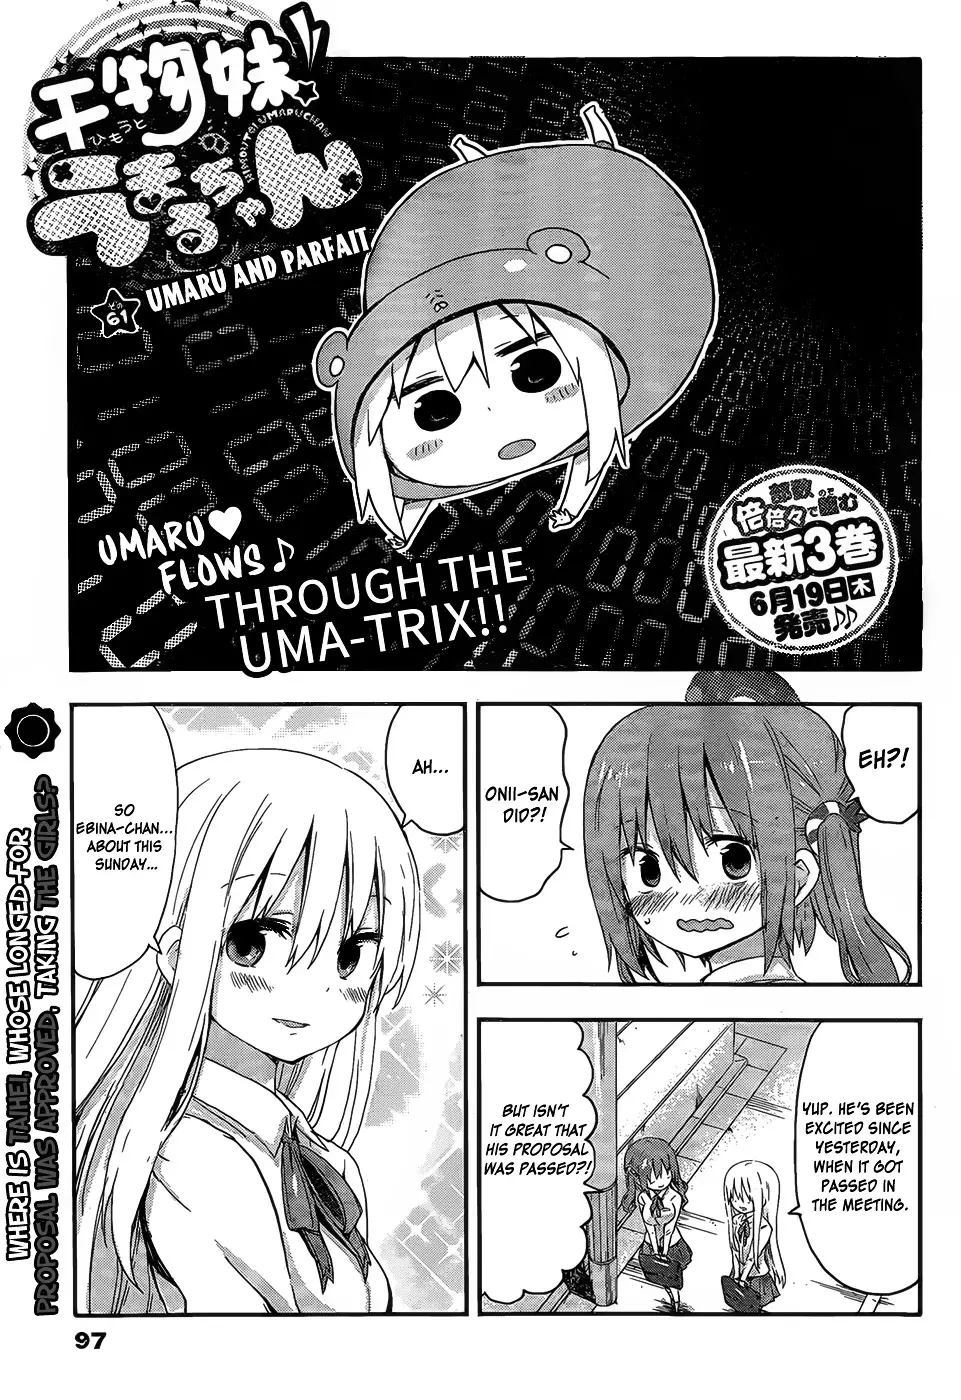 Himouto! Umaru-Chan - 61 page 1